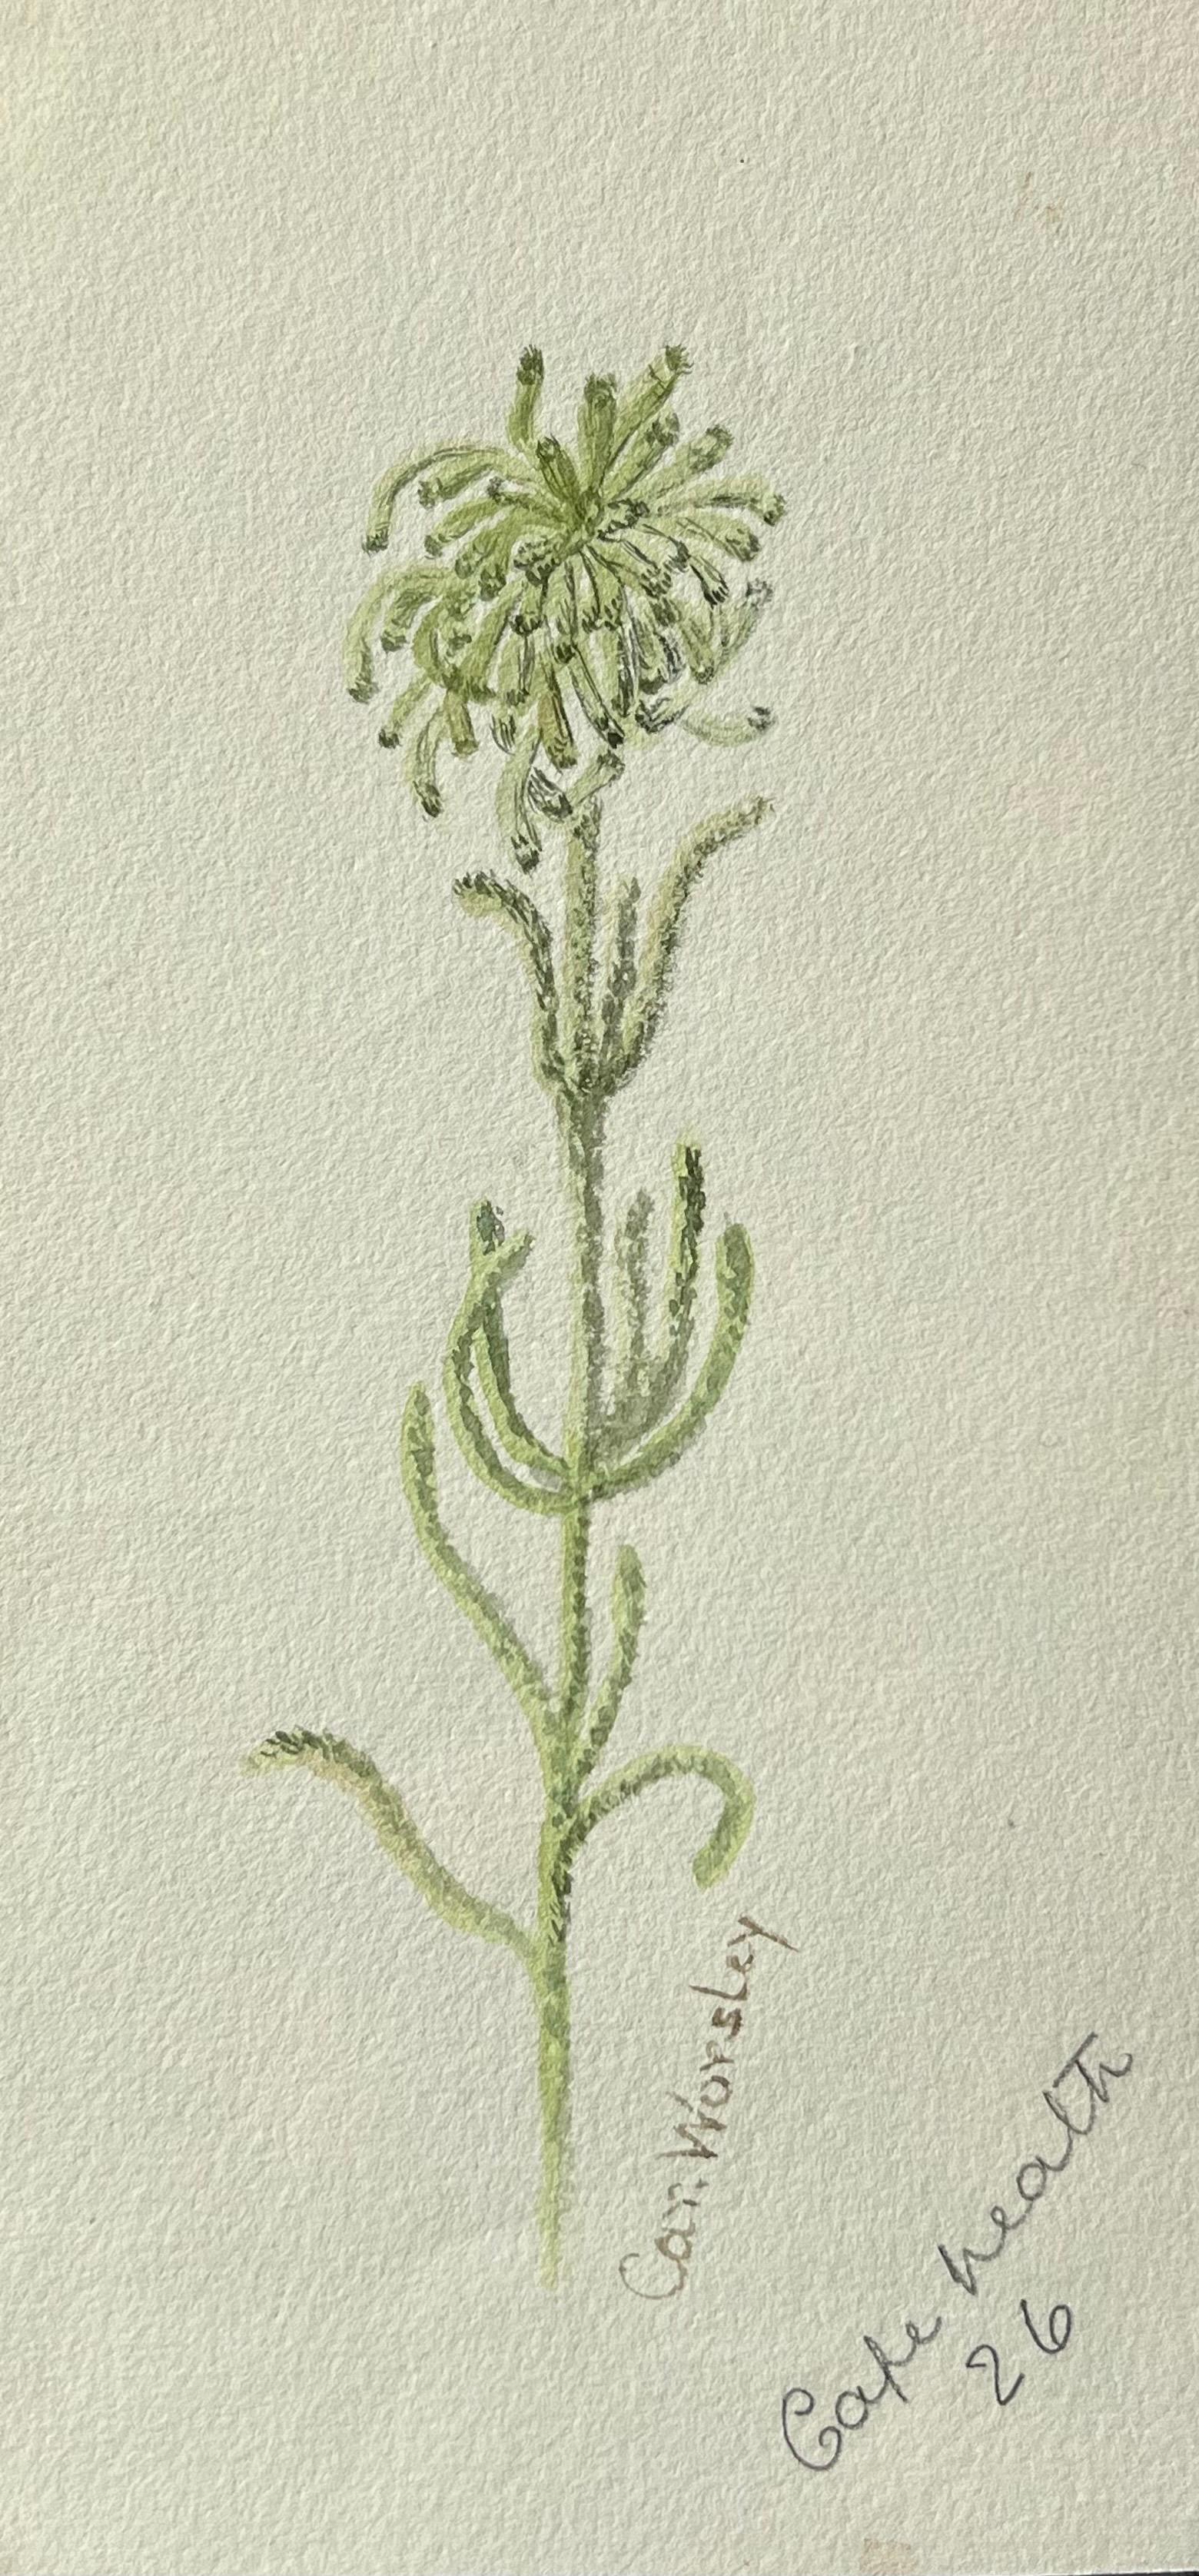 Feines antikes britisches botanisches Gemälde, Grüne große Pflanze, groß – Painting von Caroline Worsley